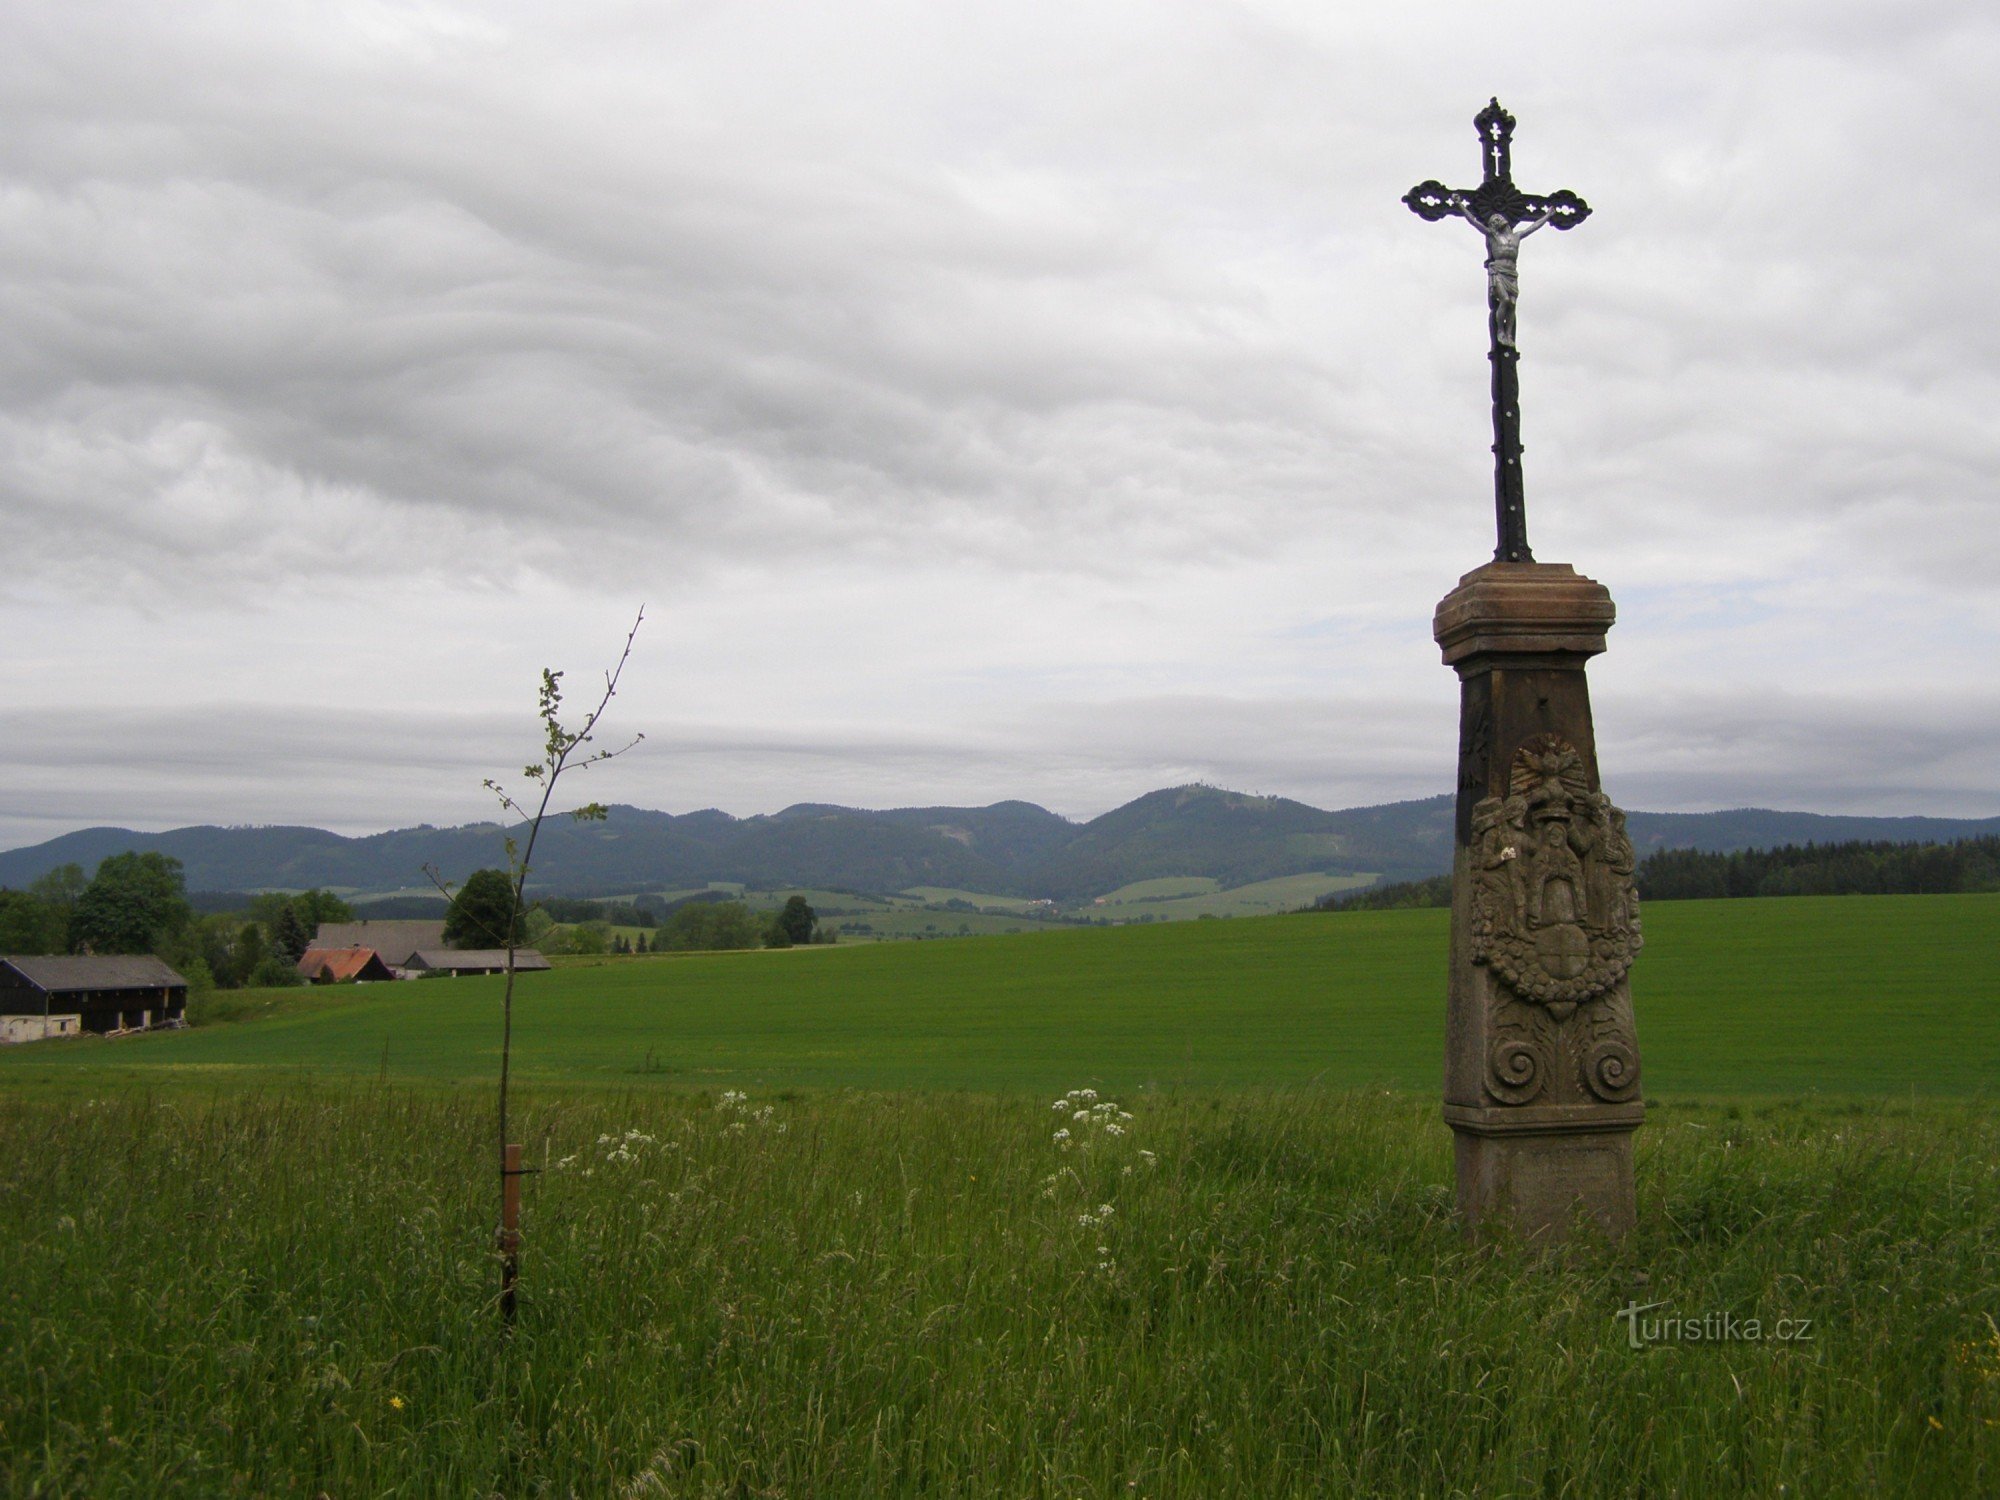 Udsigt over Javoří-bjergene - nær korset